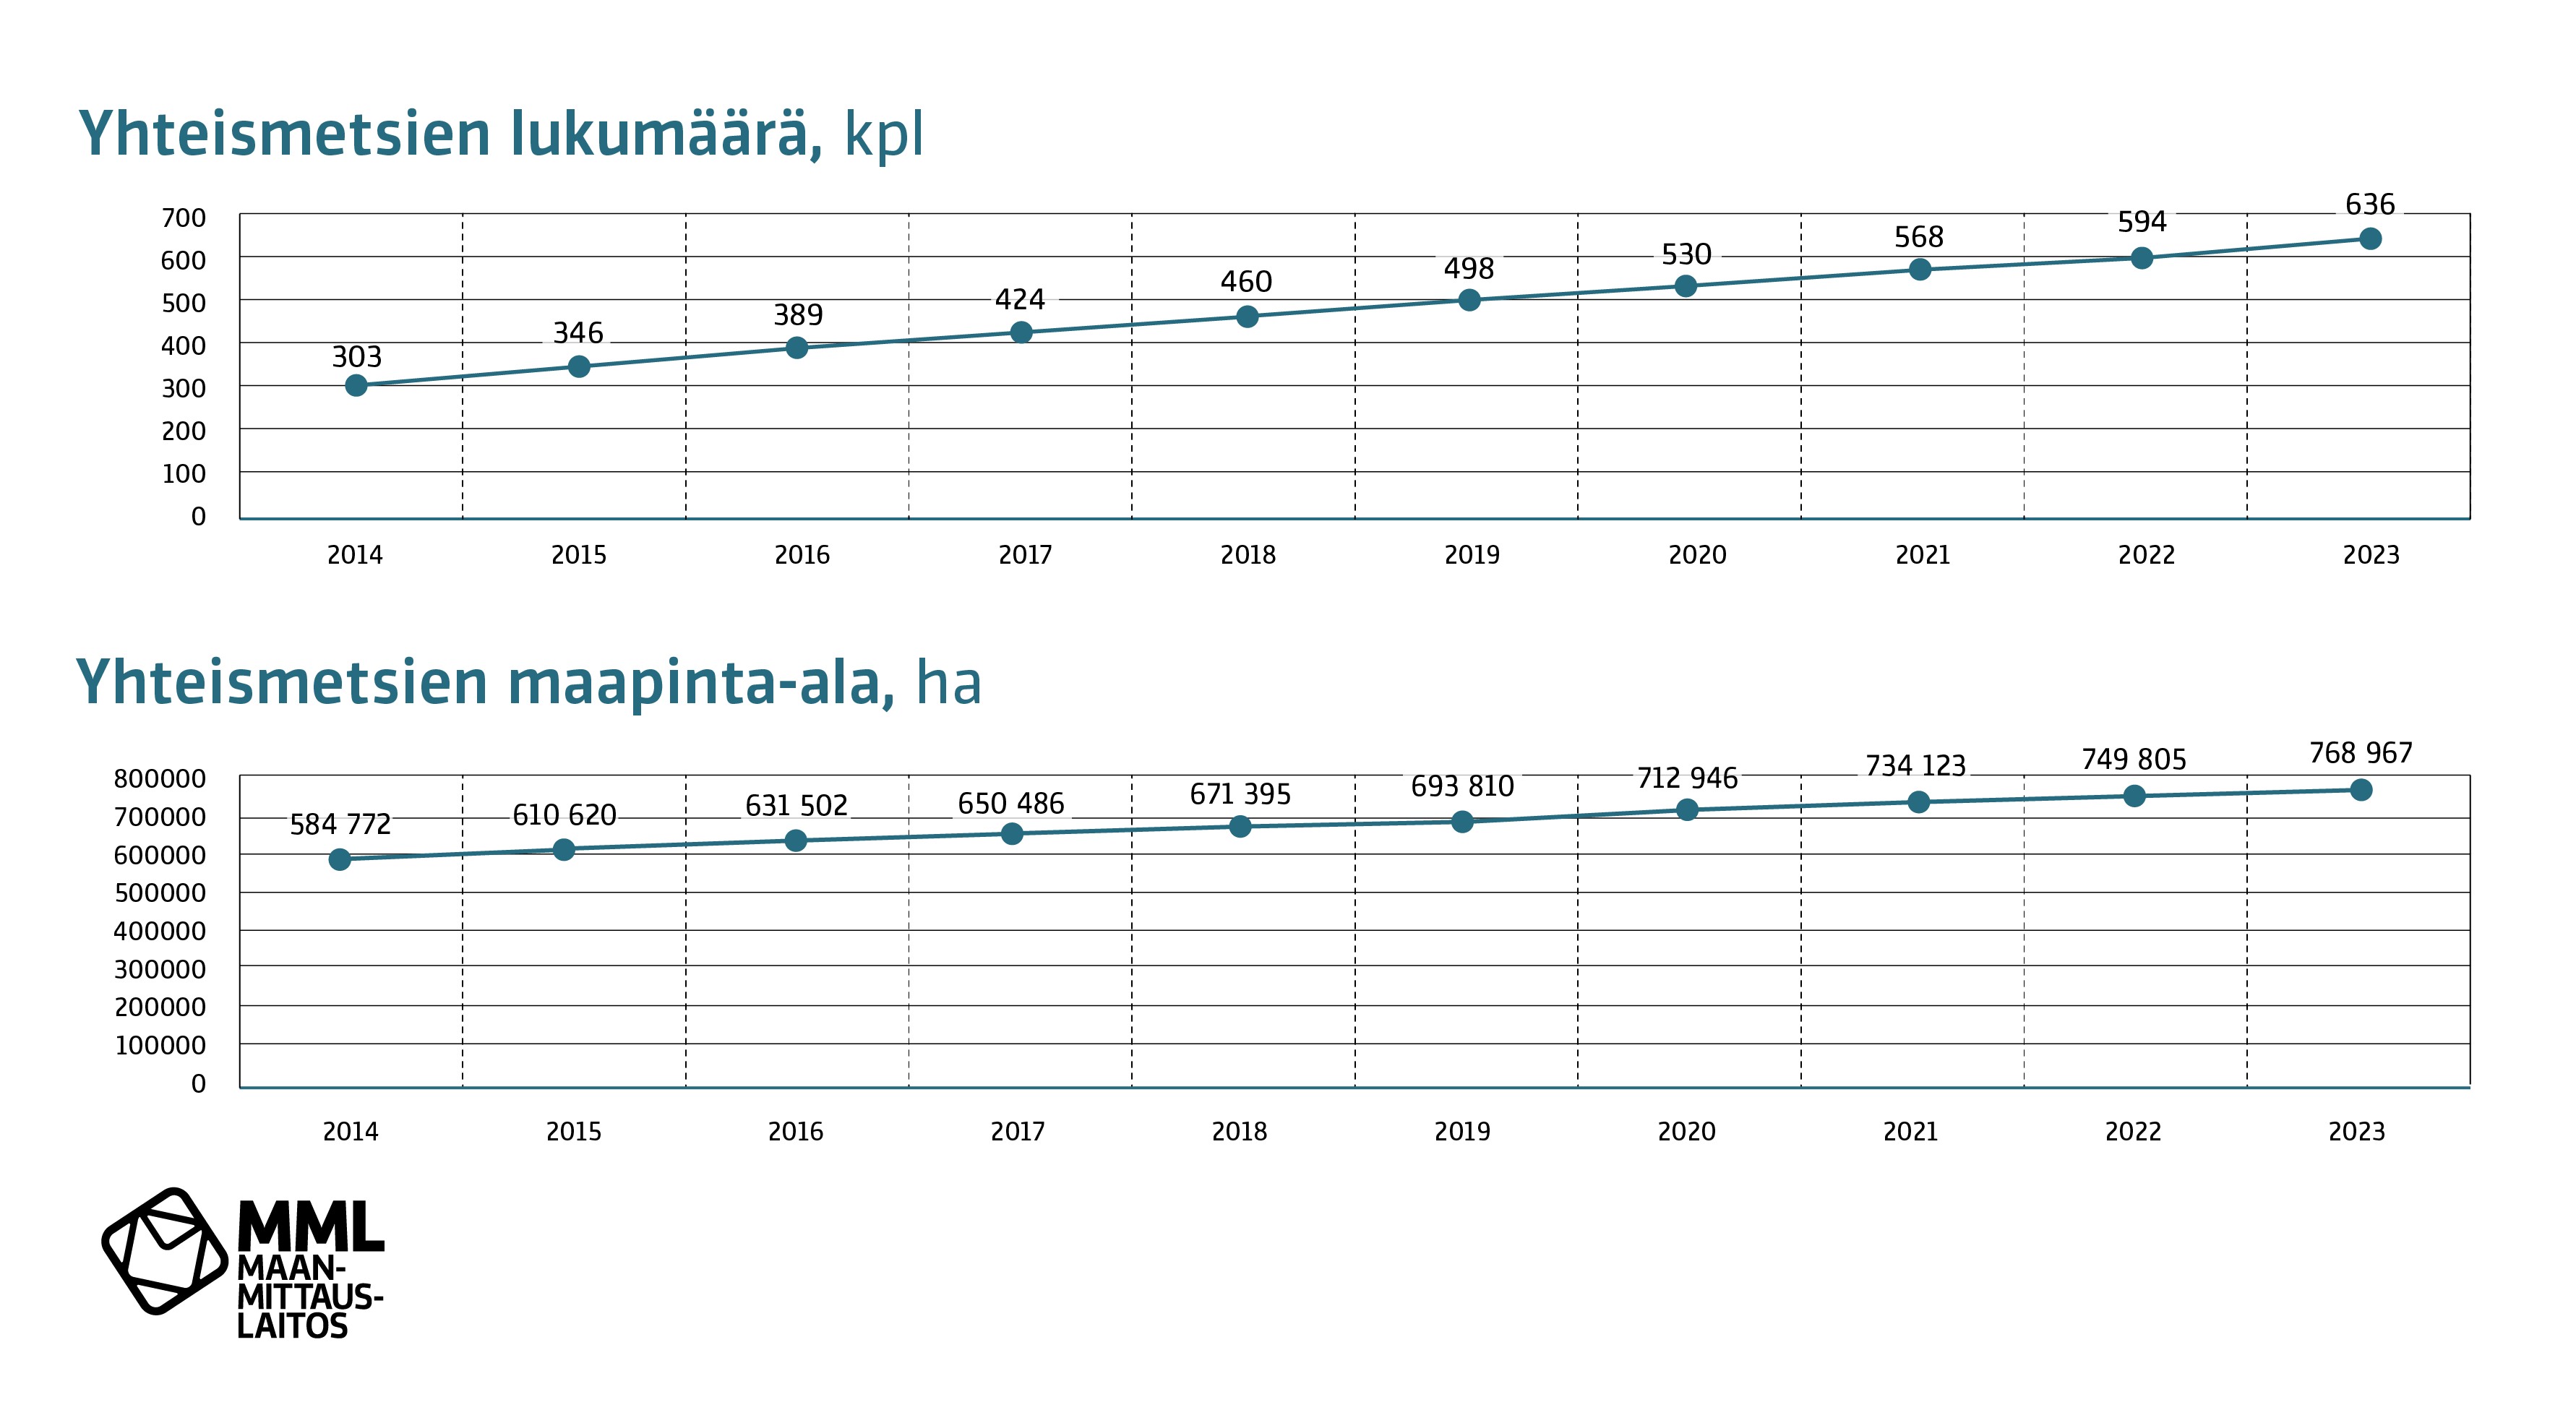 Kuvaajassa on kuvattu yhteismetsien lukumäärän ja maapinta-alan kehitystä vuosina 2014-2023. 